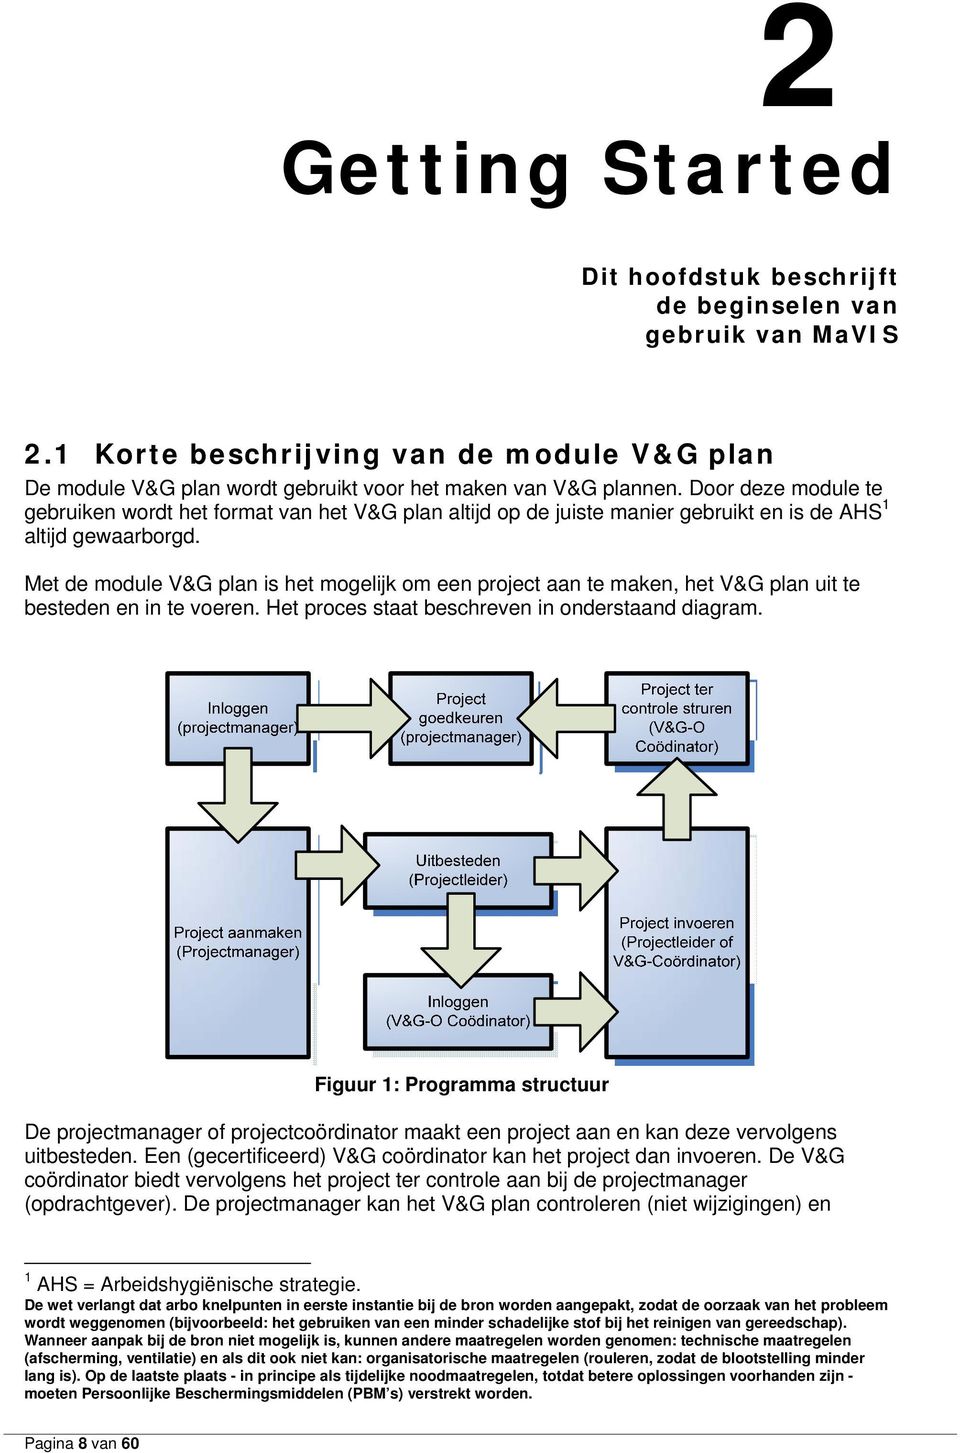 Met de module V&G plan is het mogelijk om een project aan te maken, het V&G plan uit te besteden en in te voeren. Het proces staat beschreven in onderstaand diagram.